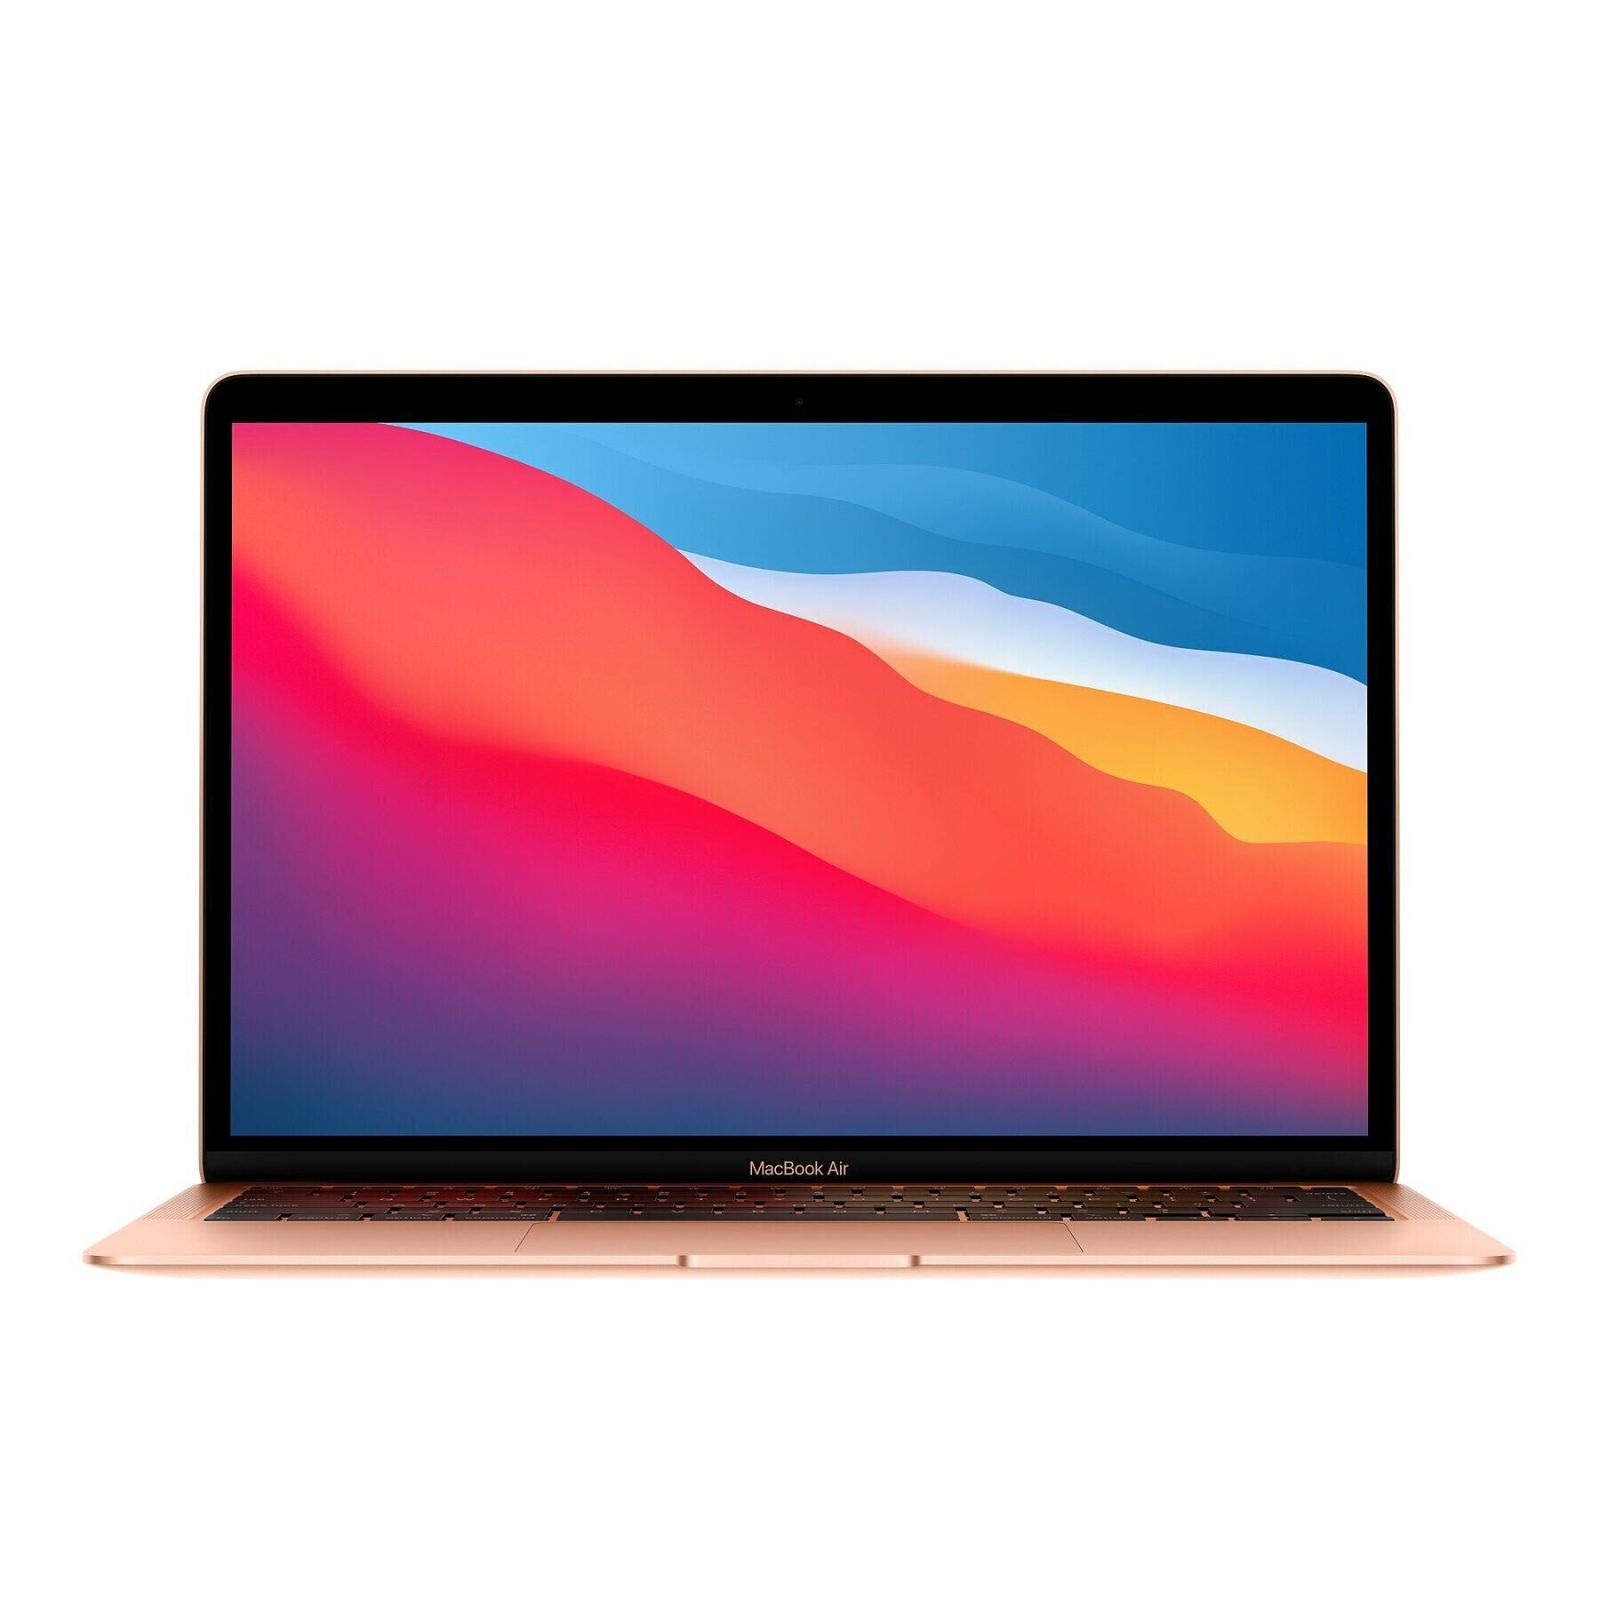 Apple MacBook Air 13", 2 TB, Gold Late 2020 (Z12A000FN, Z12A000P7)